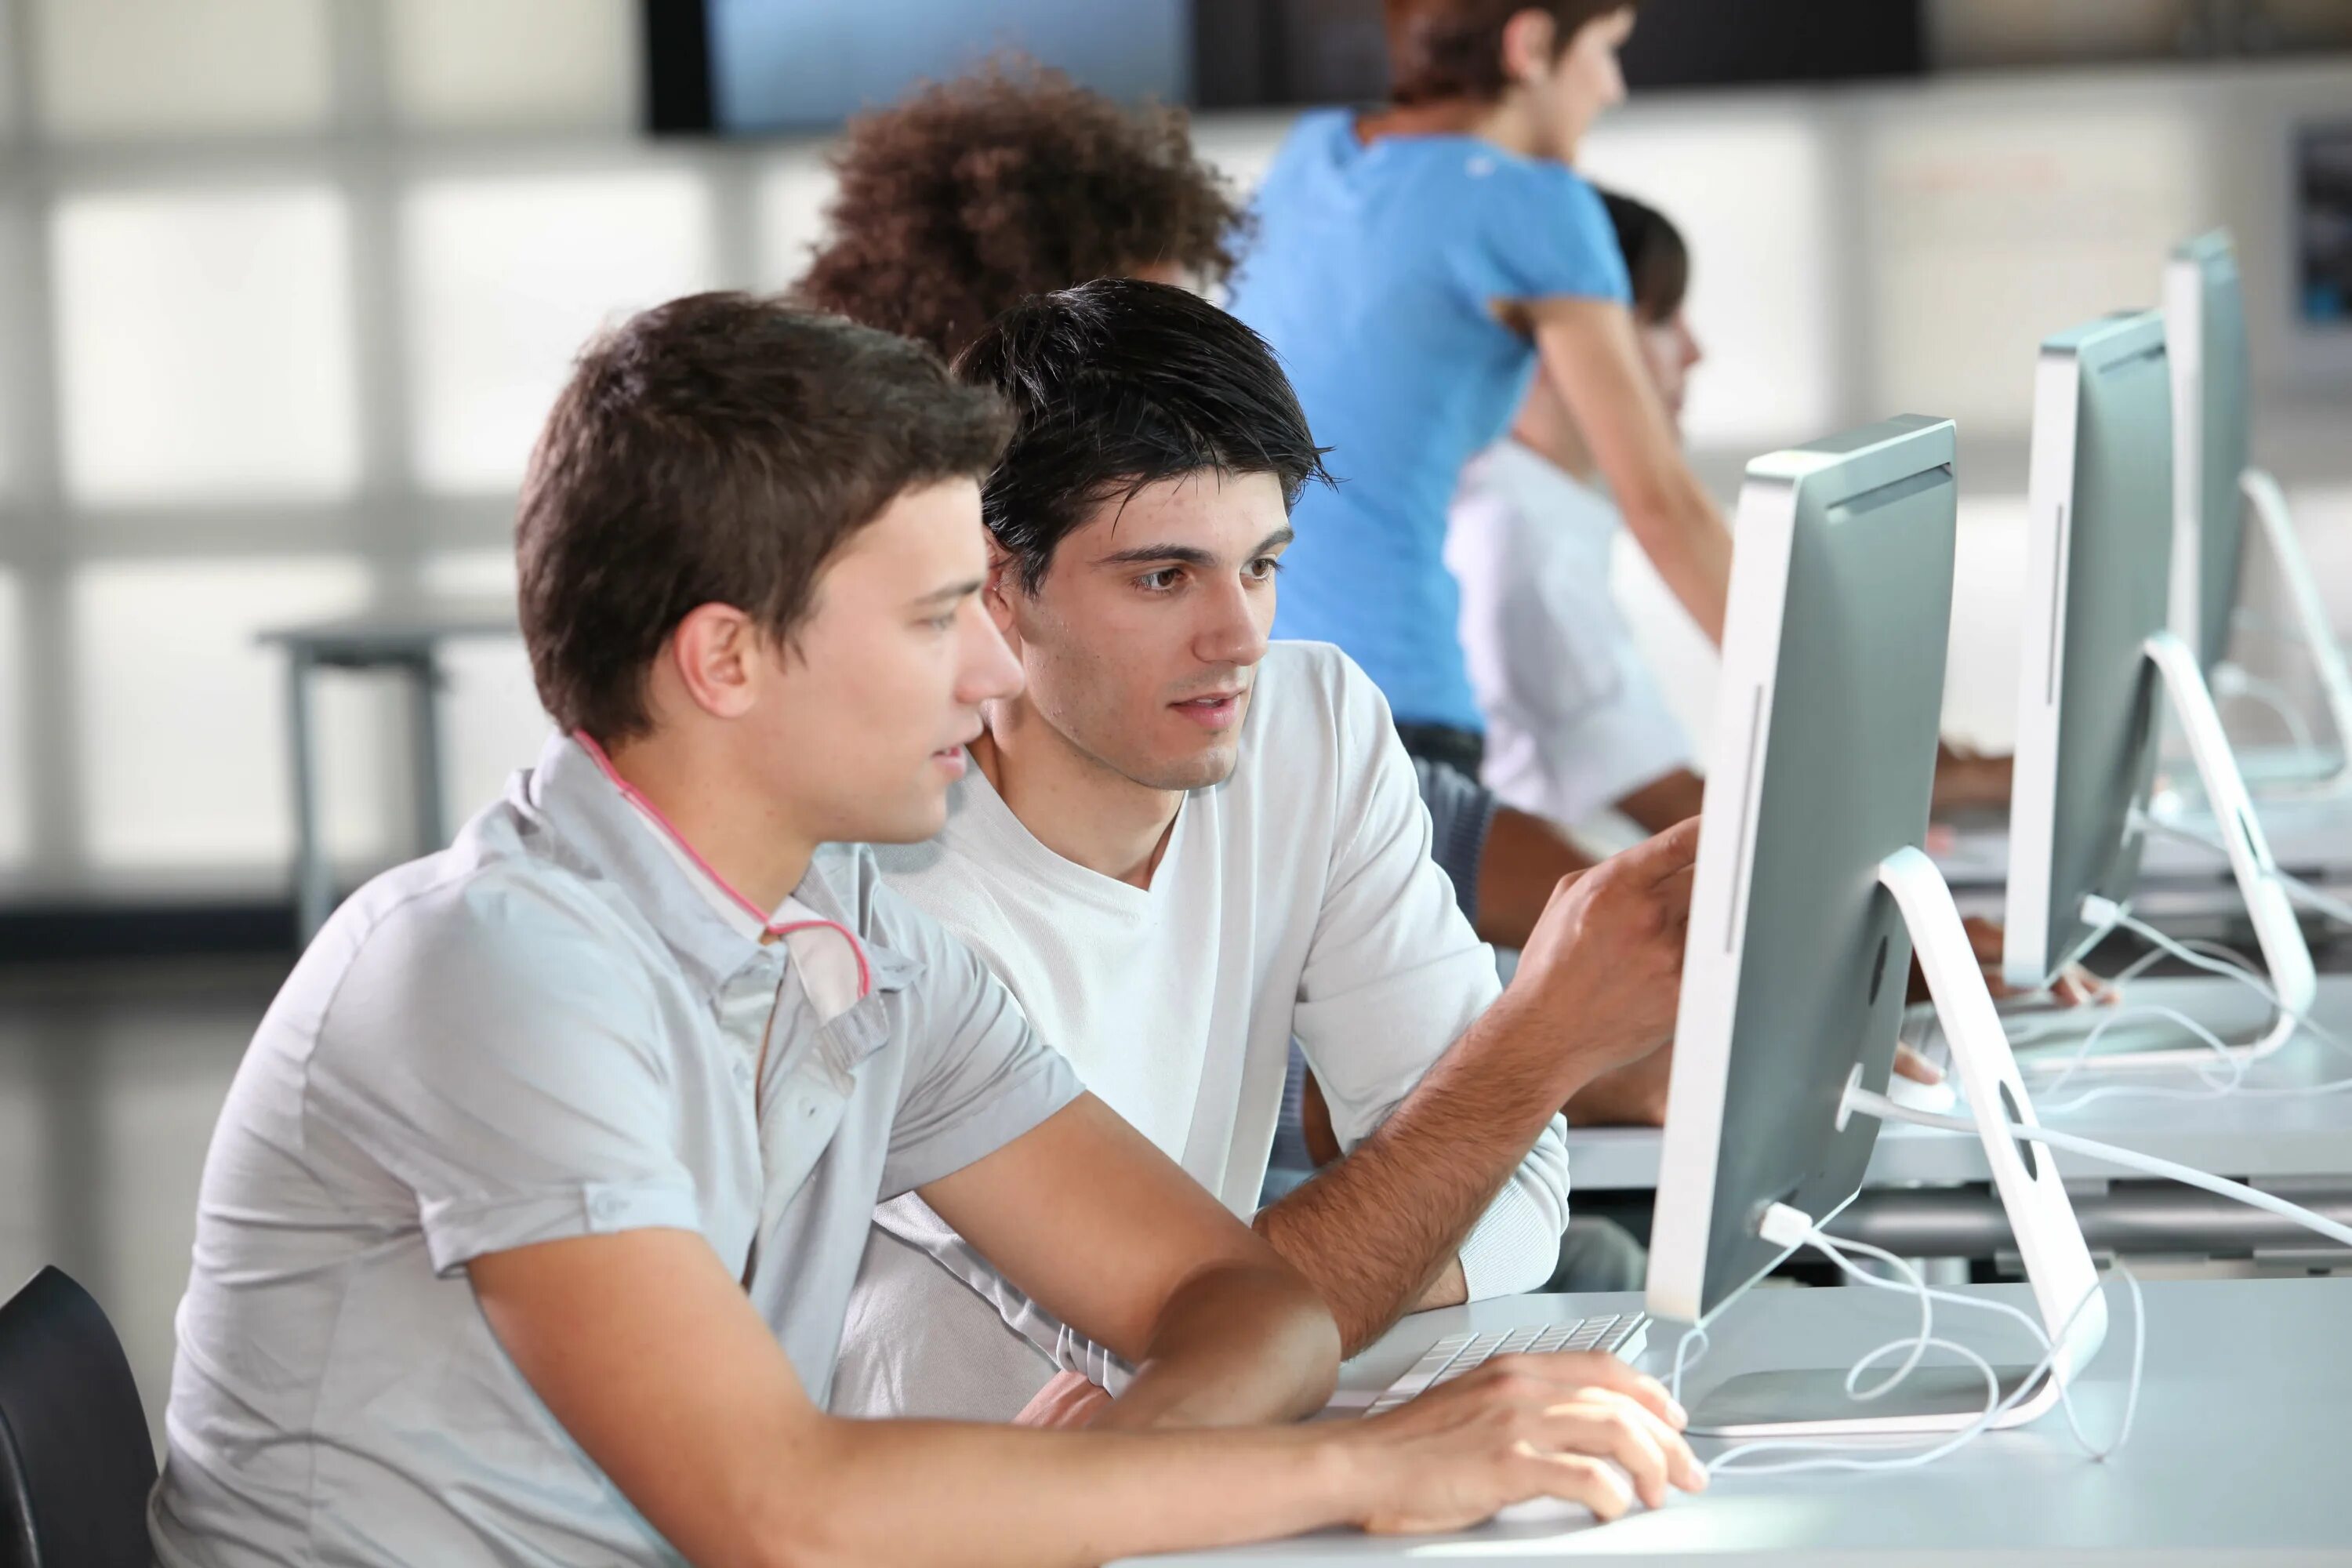 Сайт про курсы. Человек за компьютером. Студент программист. Компьютер и человек. Подросток за компьютером.